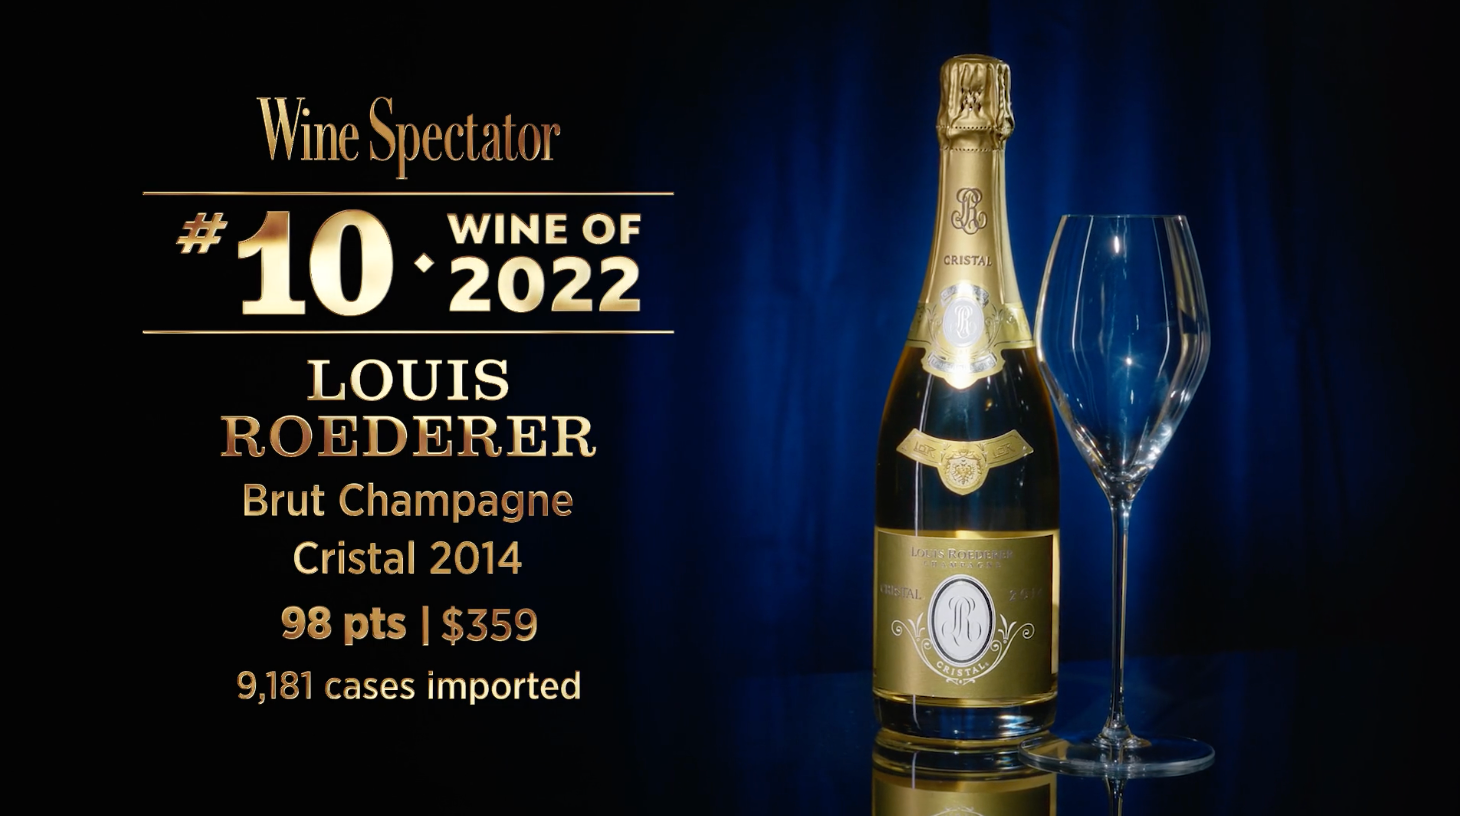 Louis Roederer Cristal Champagne 2008 Brut 1.5 LITER MAGNUM